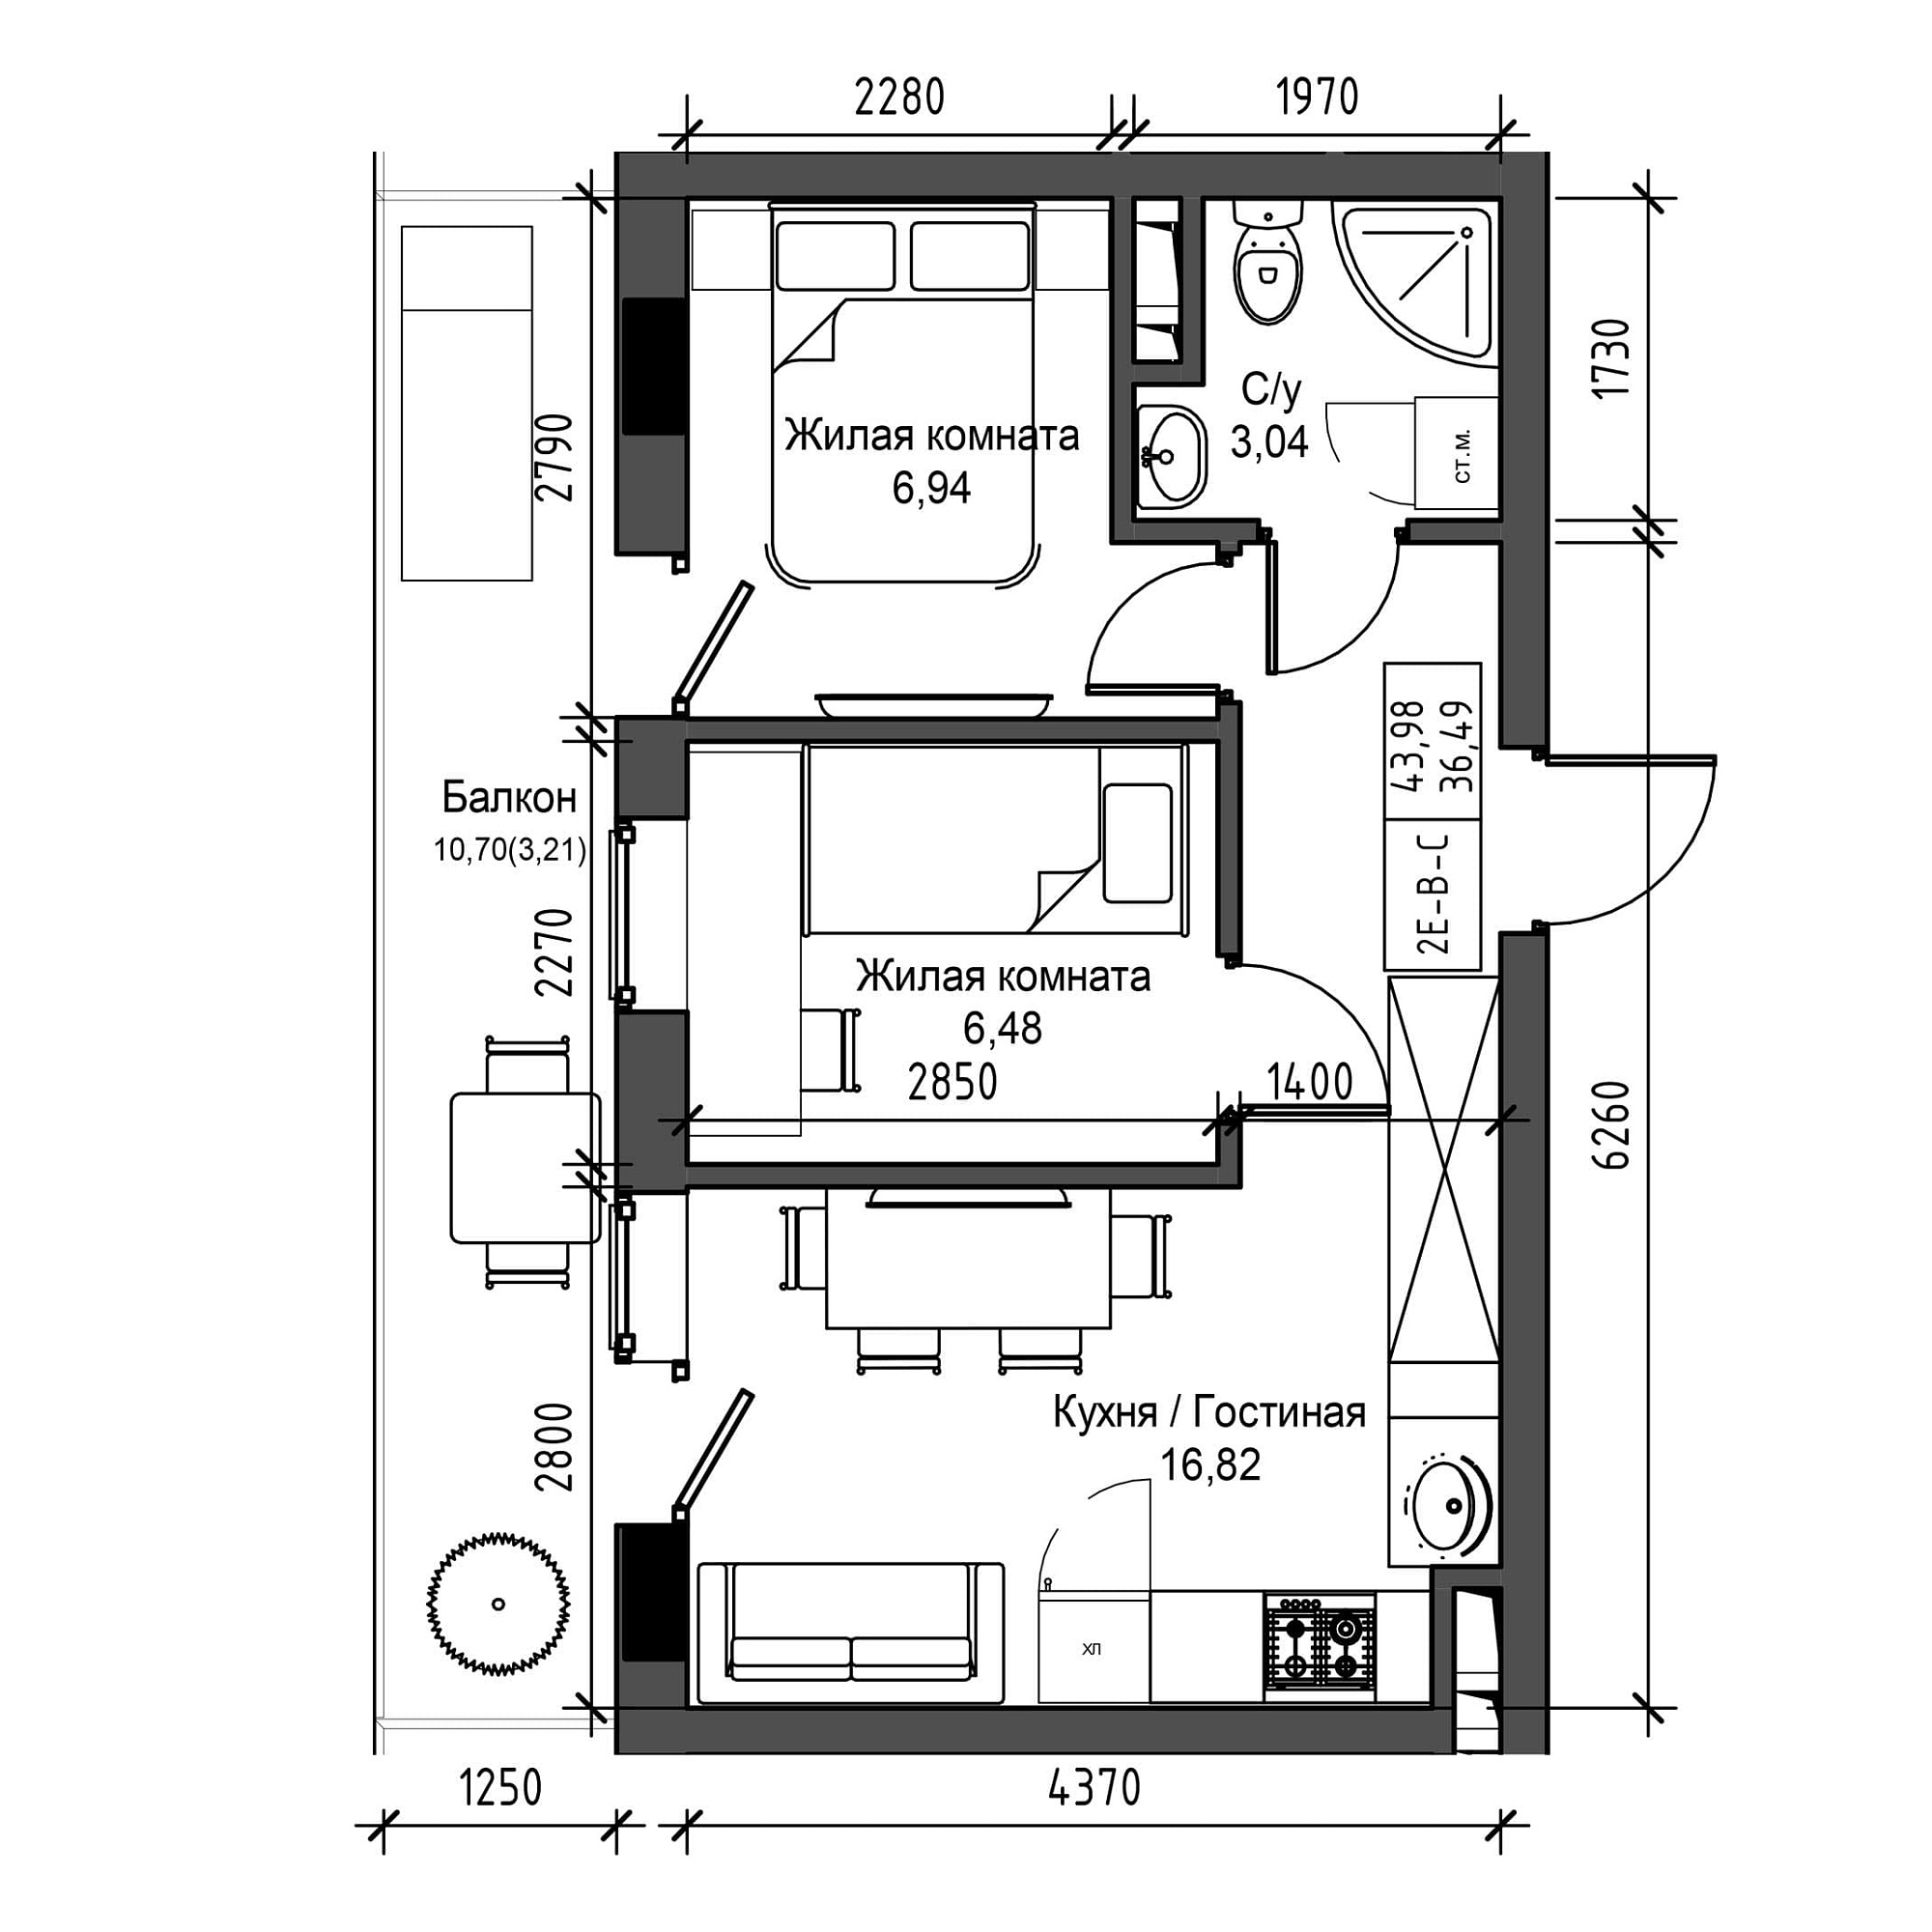 Планировка 2-к квартира площей 36.49м2, UM-001-09/0017.